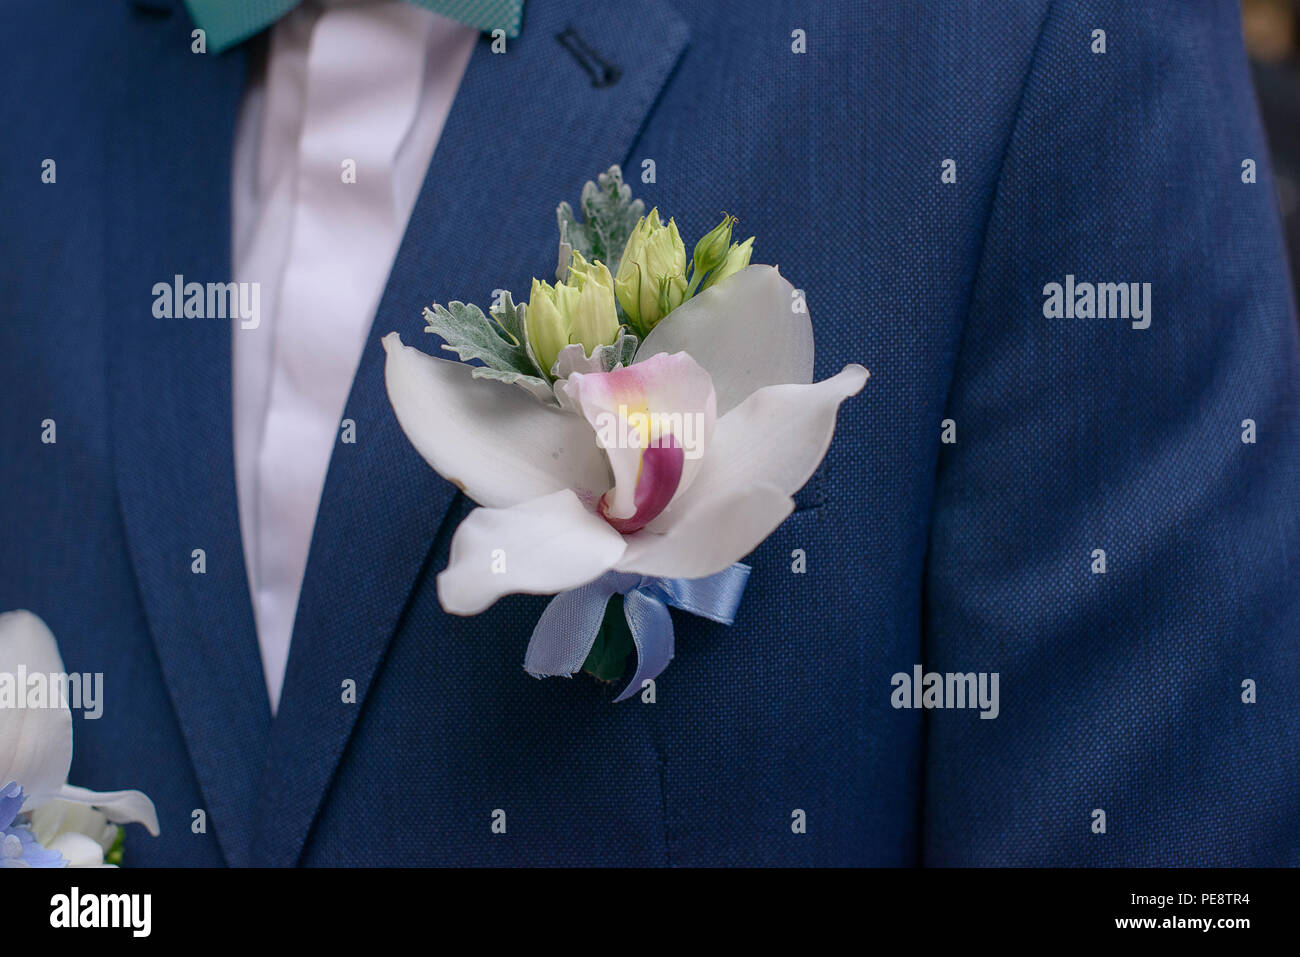 Boutonnière orchidée fraîche épinglée sur un homme marié ou une veste, d' accessoire masculin traditionnel pour les mariages, souvent jumelé avec le  bouquet de mariée Photo Stock - Alamy